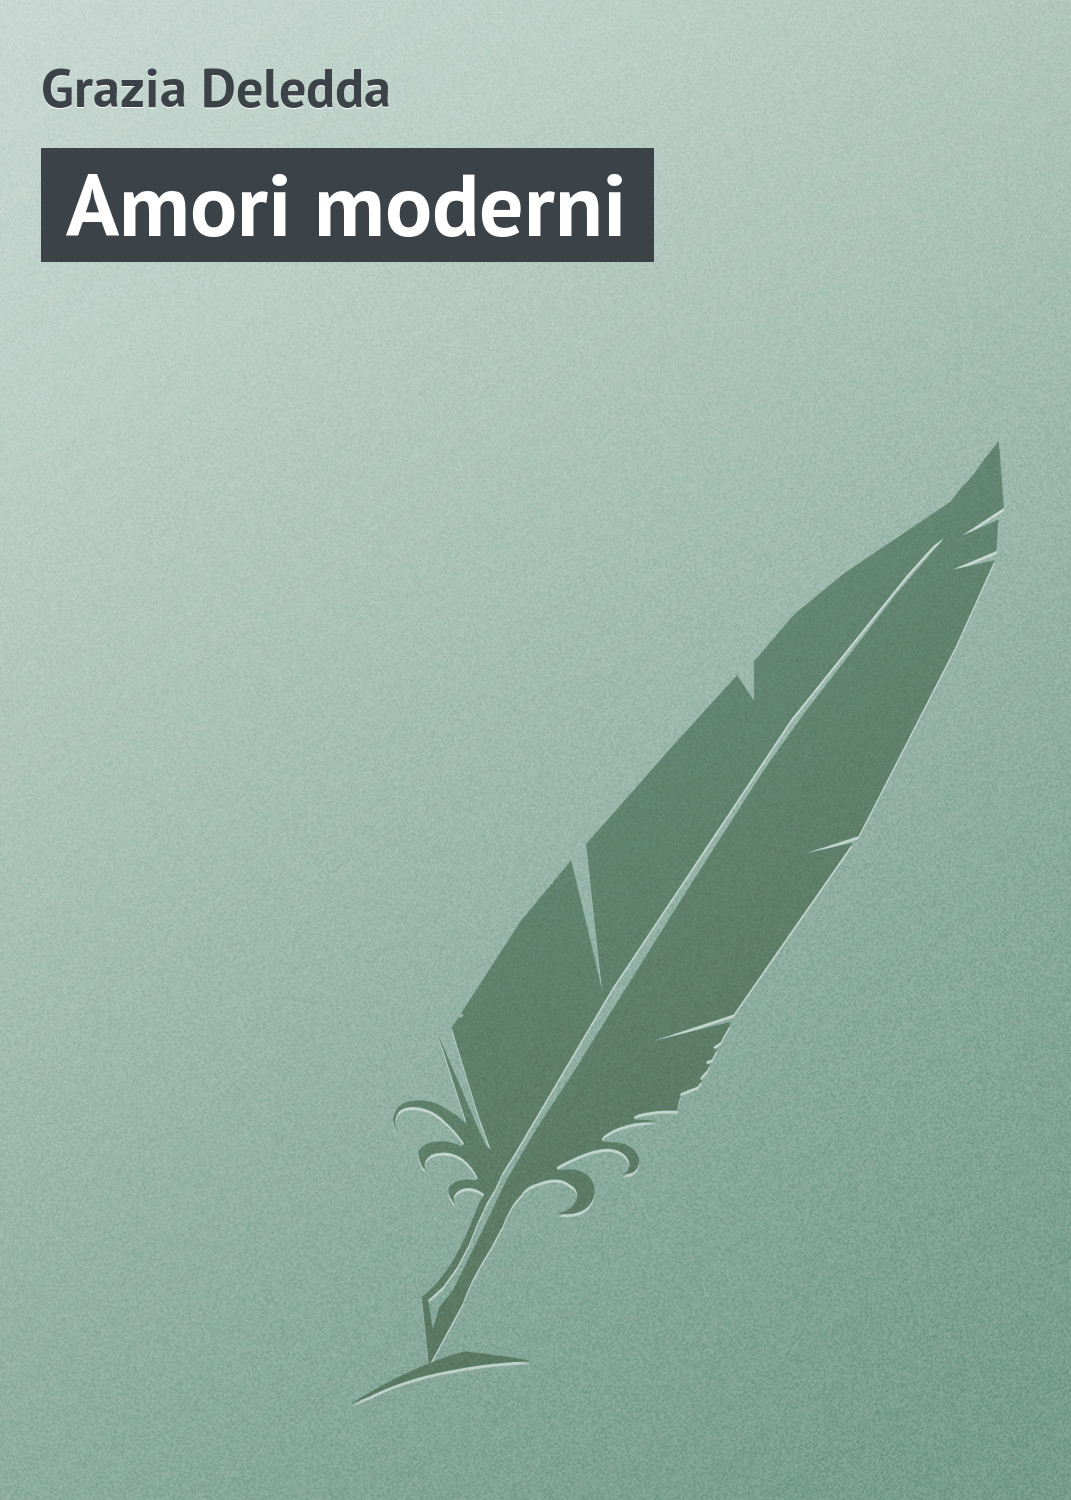 Книга Amori moderni из серии , созданная Grazia Deledda, может относится к жанру Зарубежная старинная литература, Зарубежная классика. Стоимость электронной книги Amori moderni с идентификатором 21103942 составляет 5.99 руб.